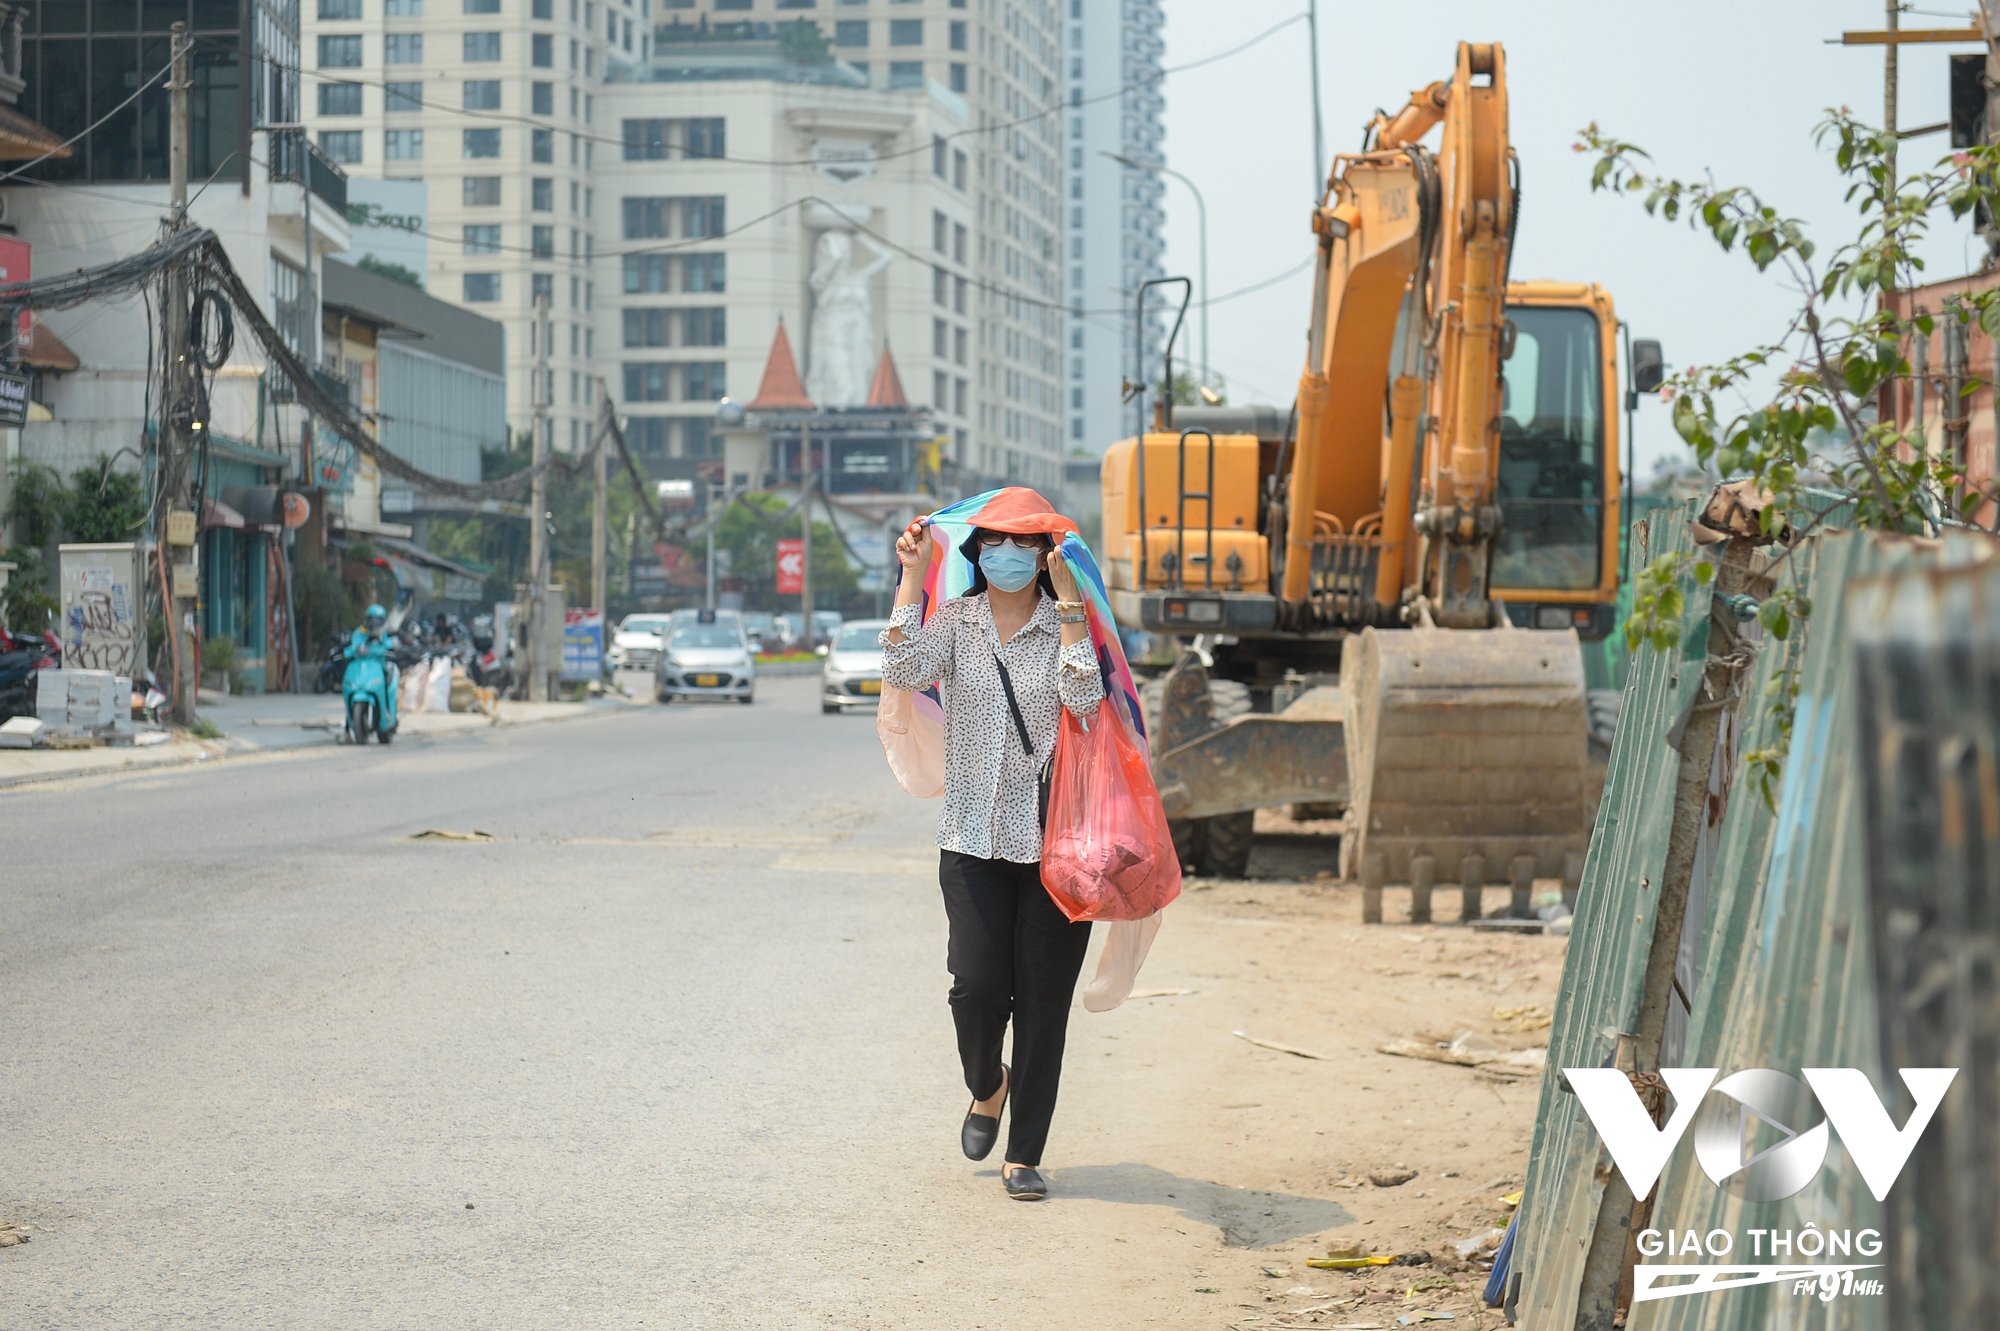 Đường Xuân Diệu, quận Tây Hồ (Hà Nội) cũng thưa thớt người, phương tiện tham gia giao thông.